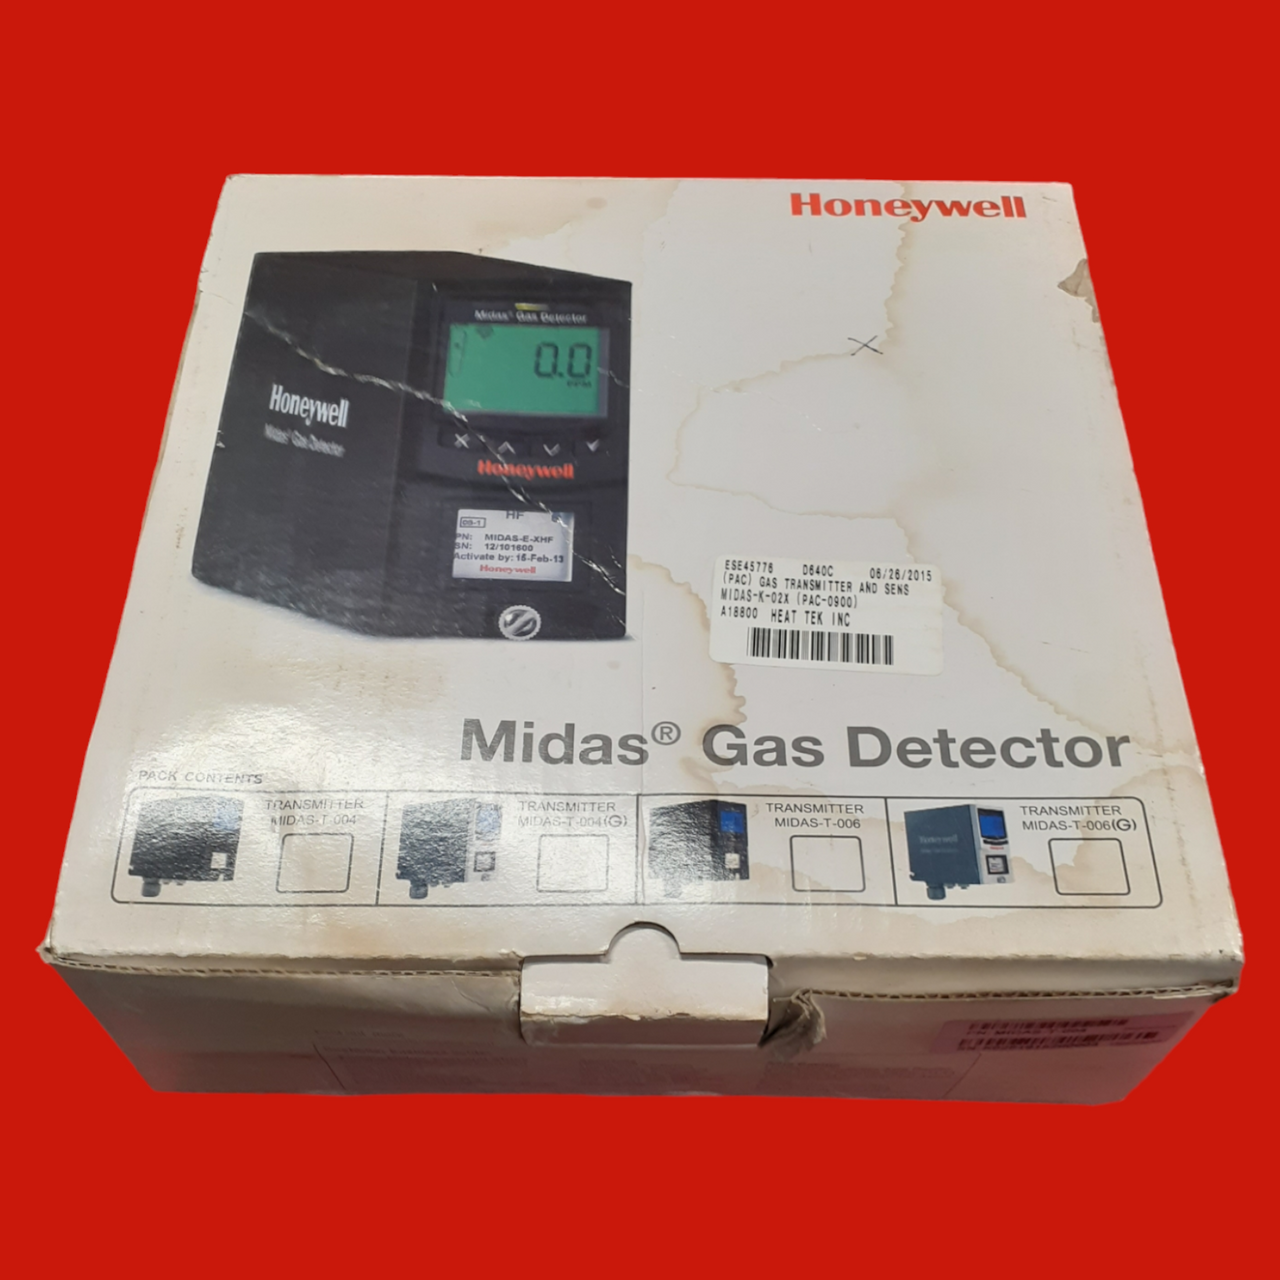 Honeywell Midas Gas Detector, MIDAS-T-004